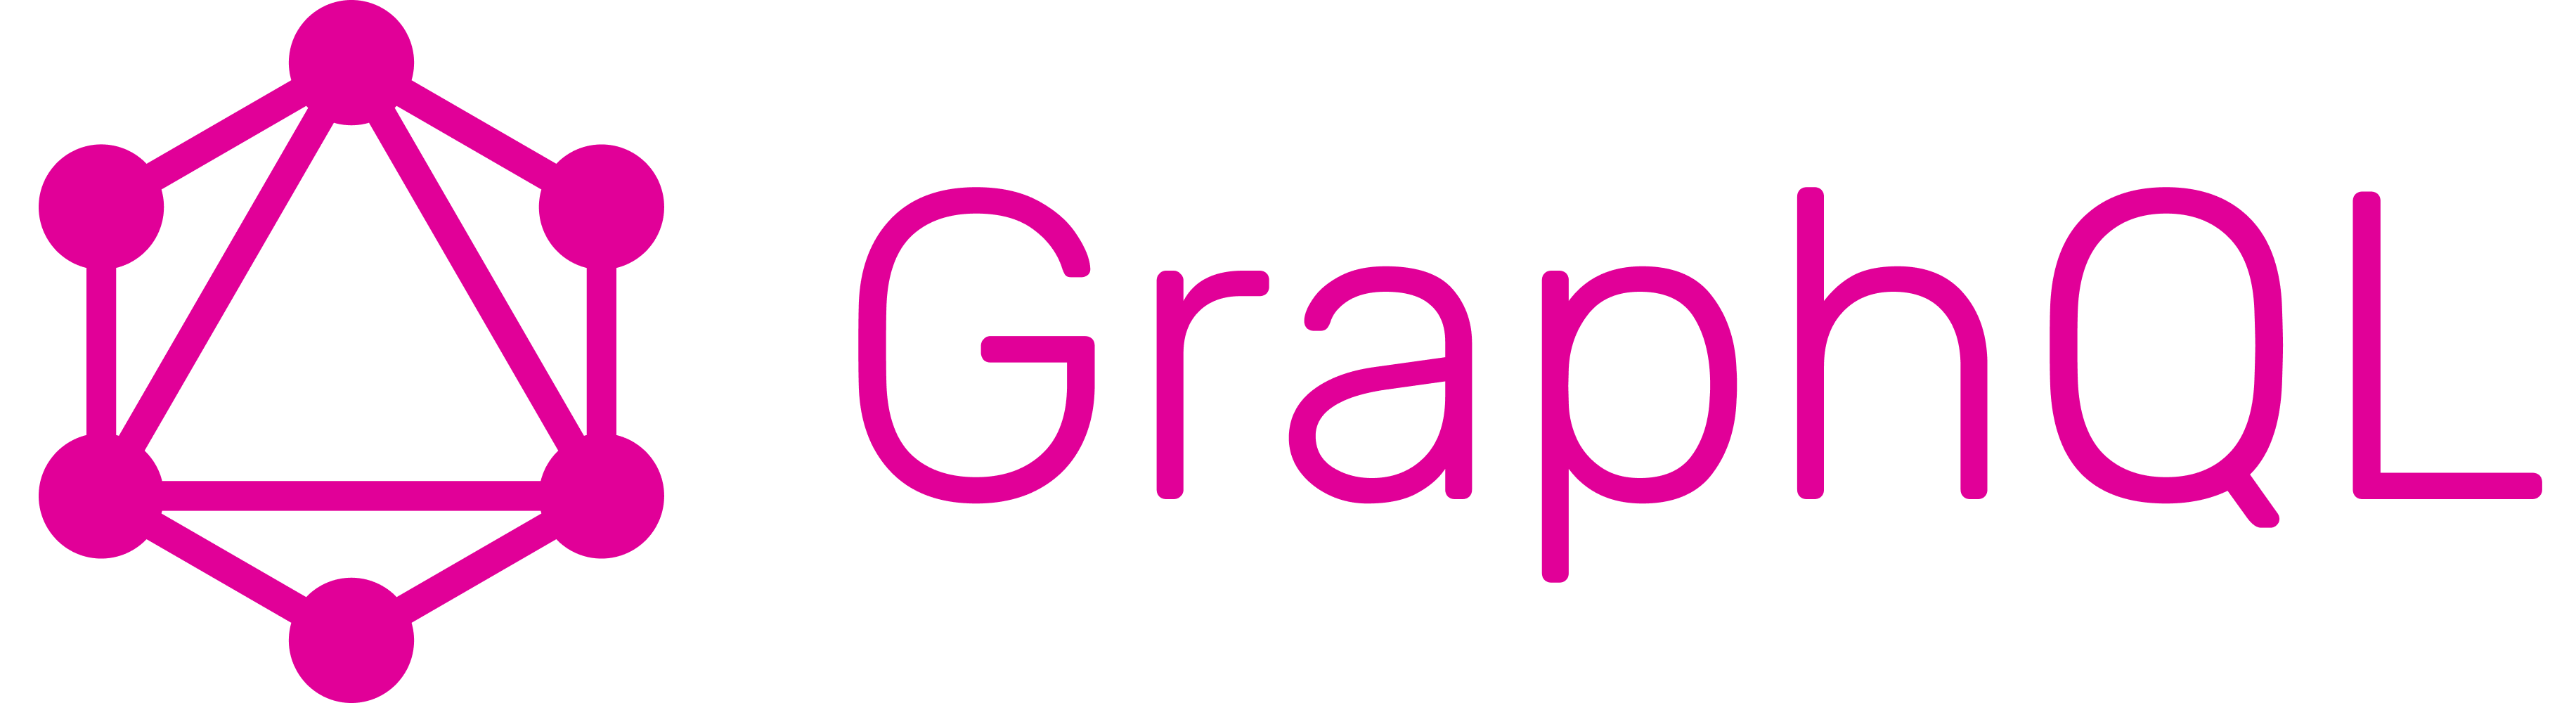 Skill: GraphQL